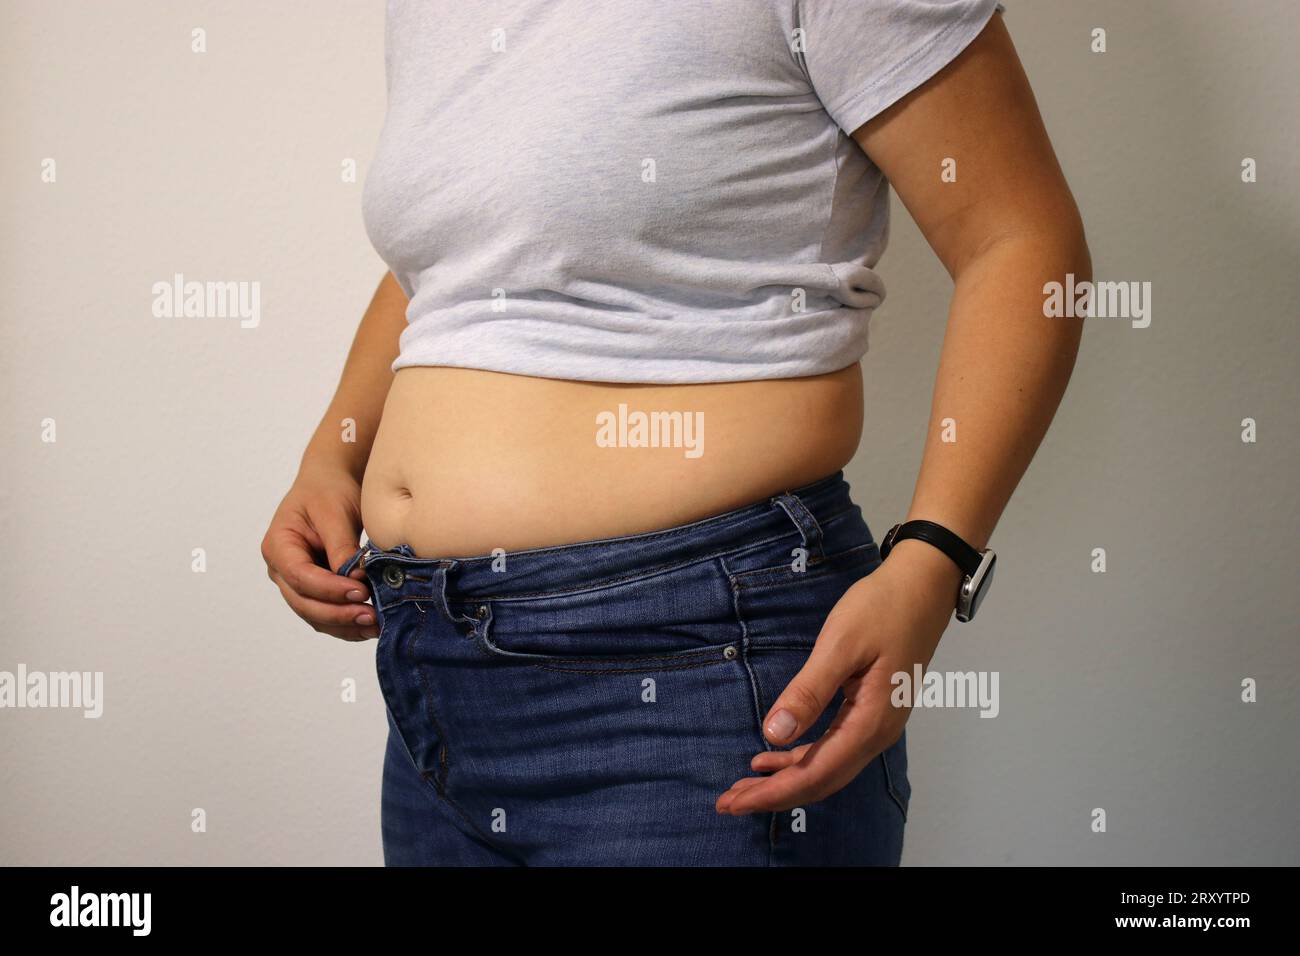 Mujer joven muestra su vientre caído después de perder peso y